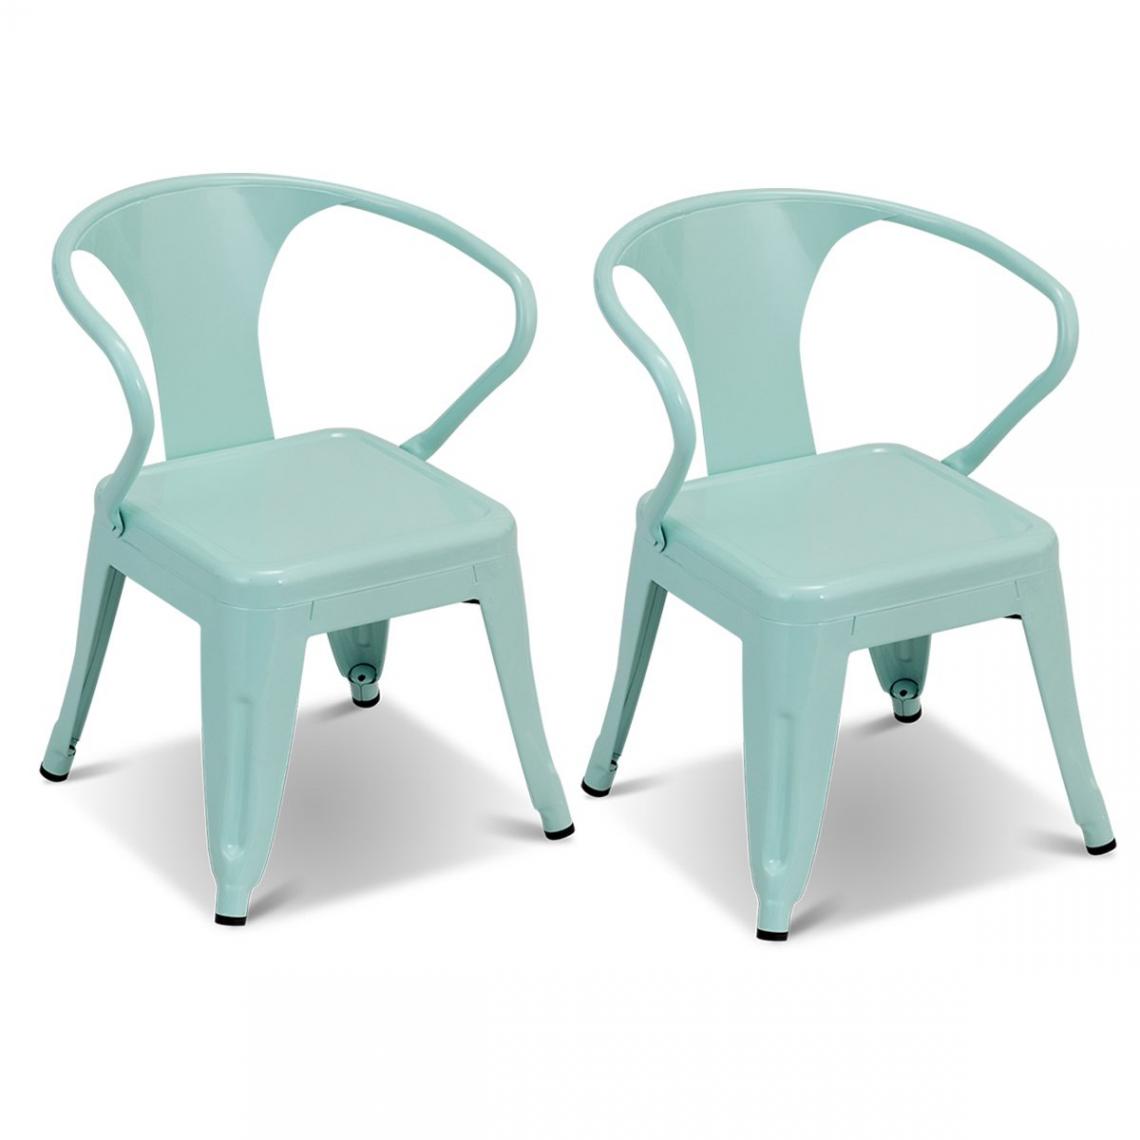 Decoshop26 - Lot de 2 chaises pour enfant de style rétro 44 x 44 x 55 cm en acier bleu 20_0000739 - Chaises